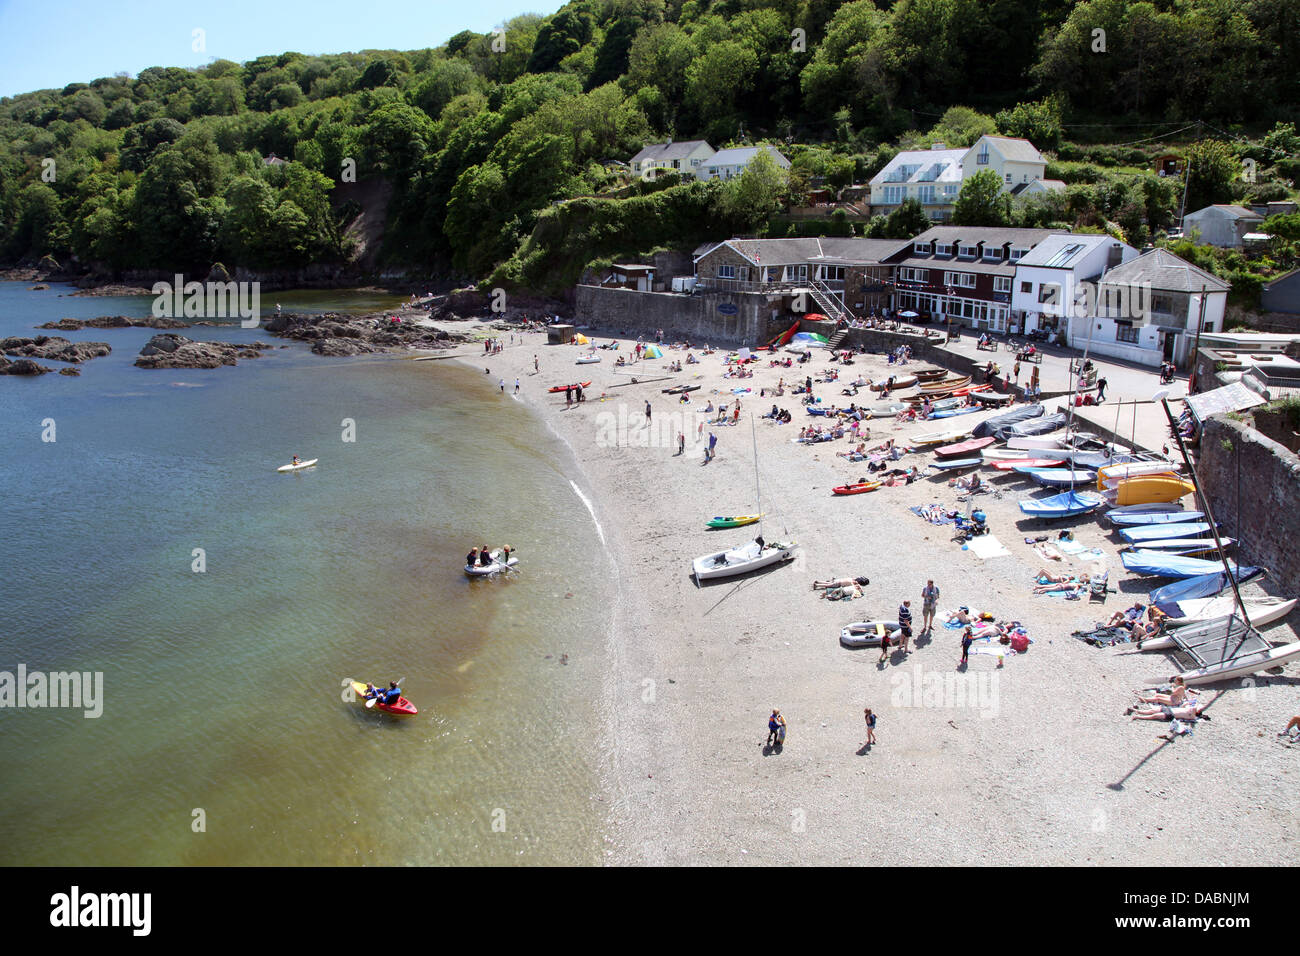 Cawsand beach à partir de la rue au-dessus, Plymouth, Cornwall, Angleterre, Royaume-Uni, Europe Banque D'Images